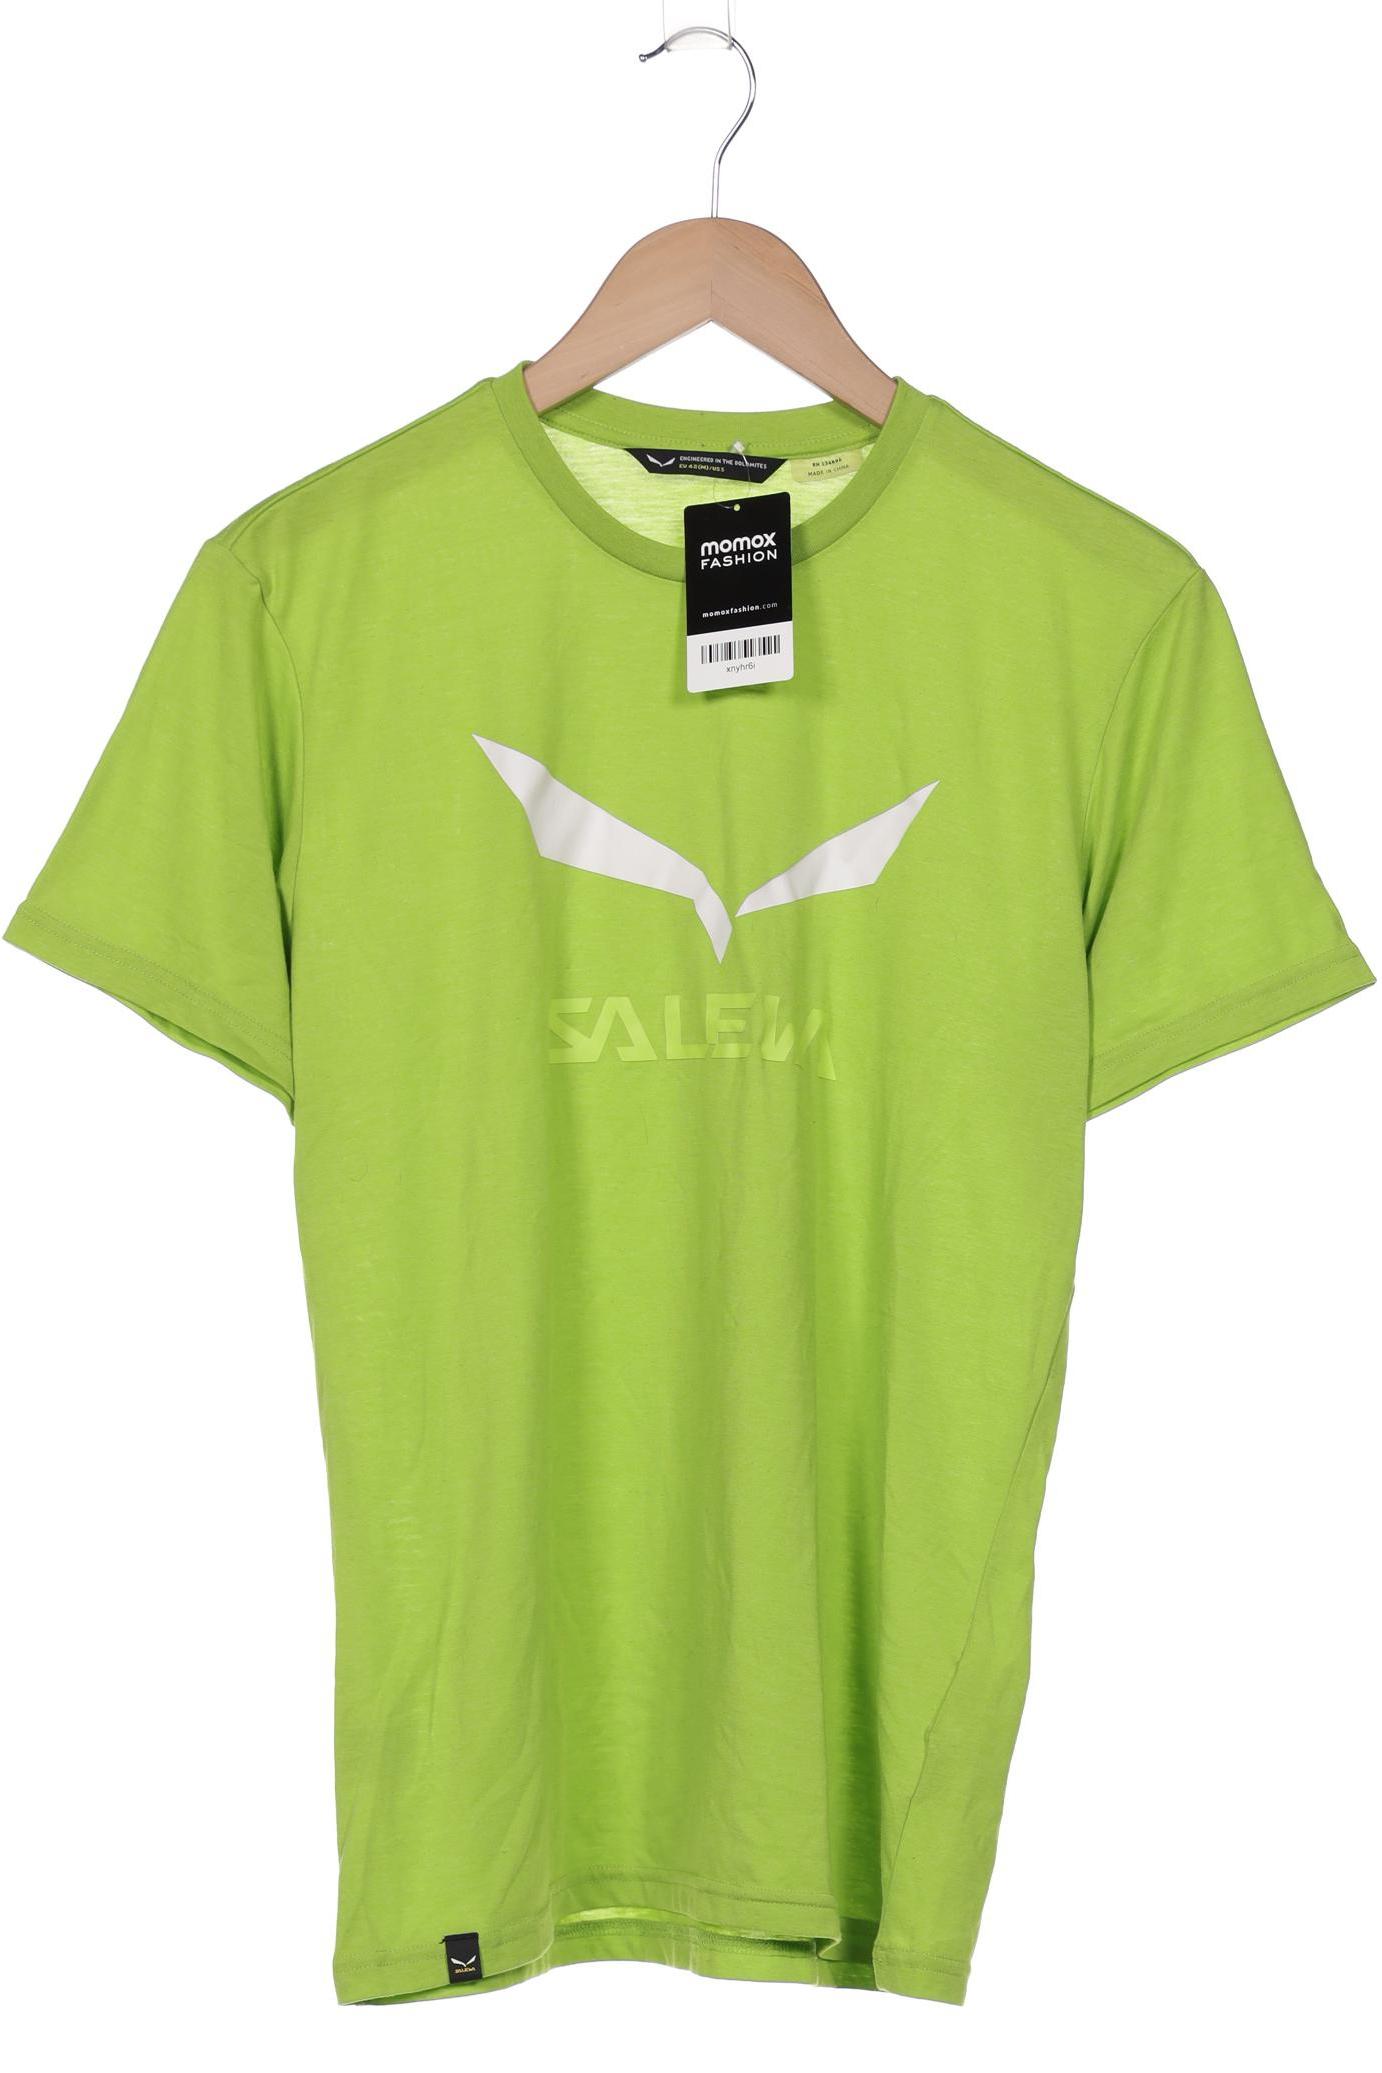 Salewa Herren T-Shirt, grün von Salewa